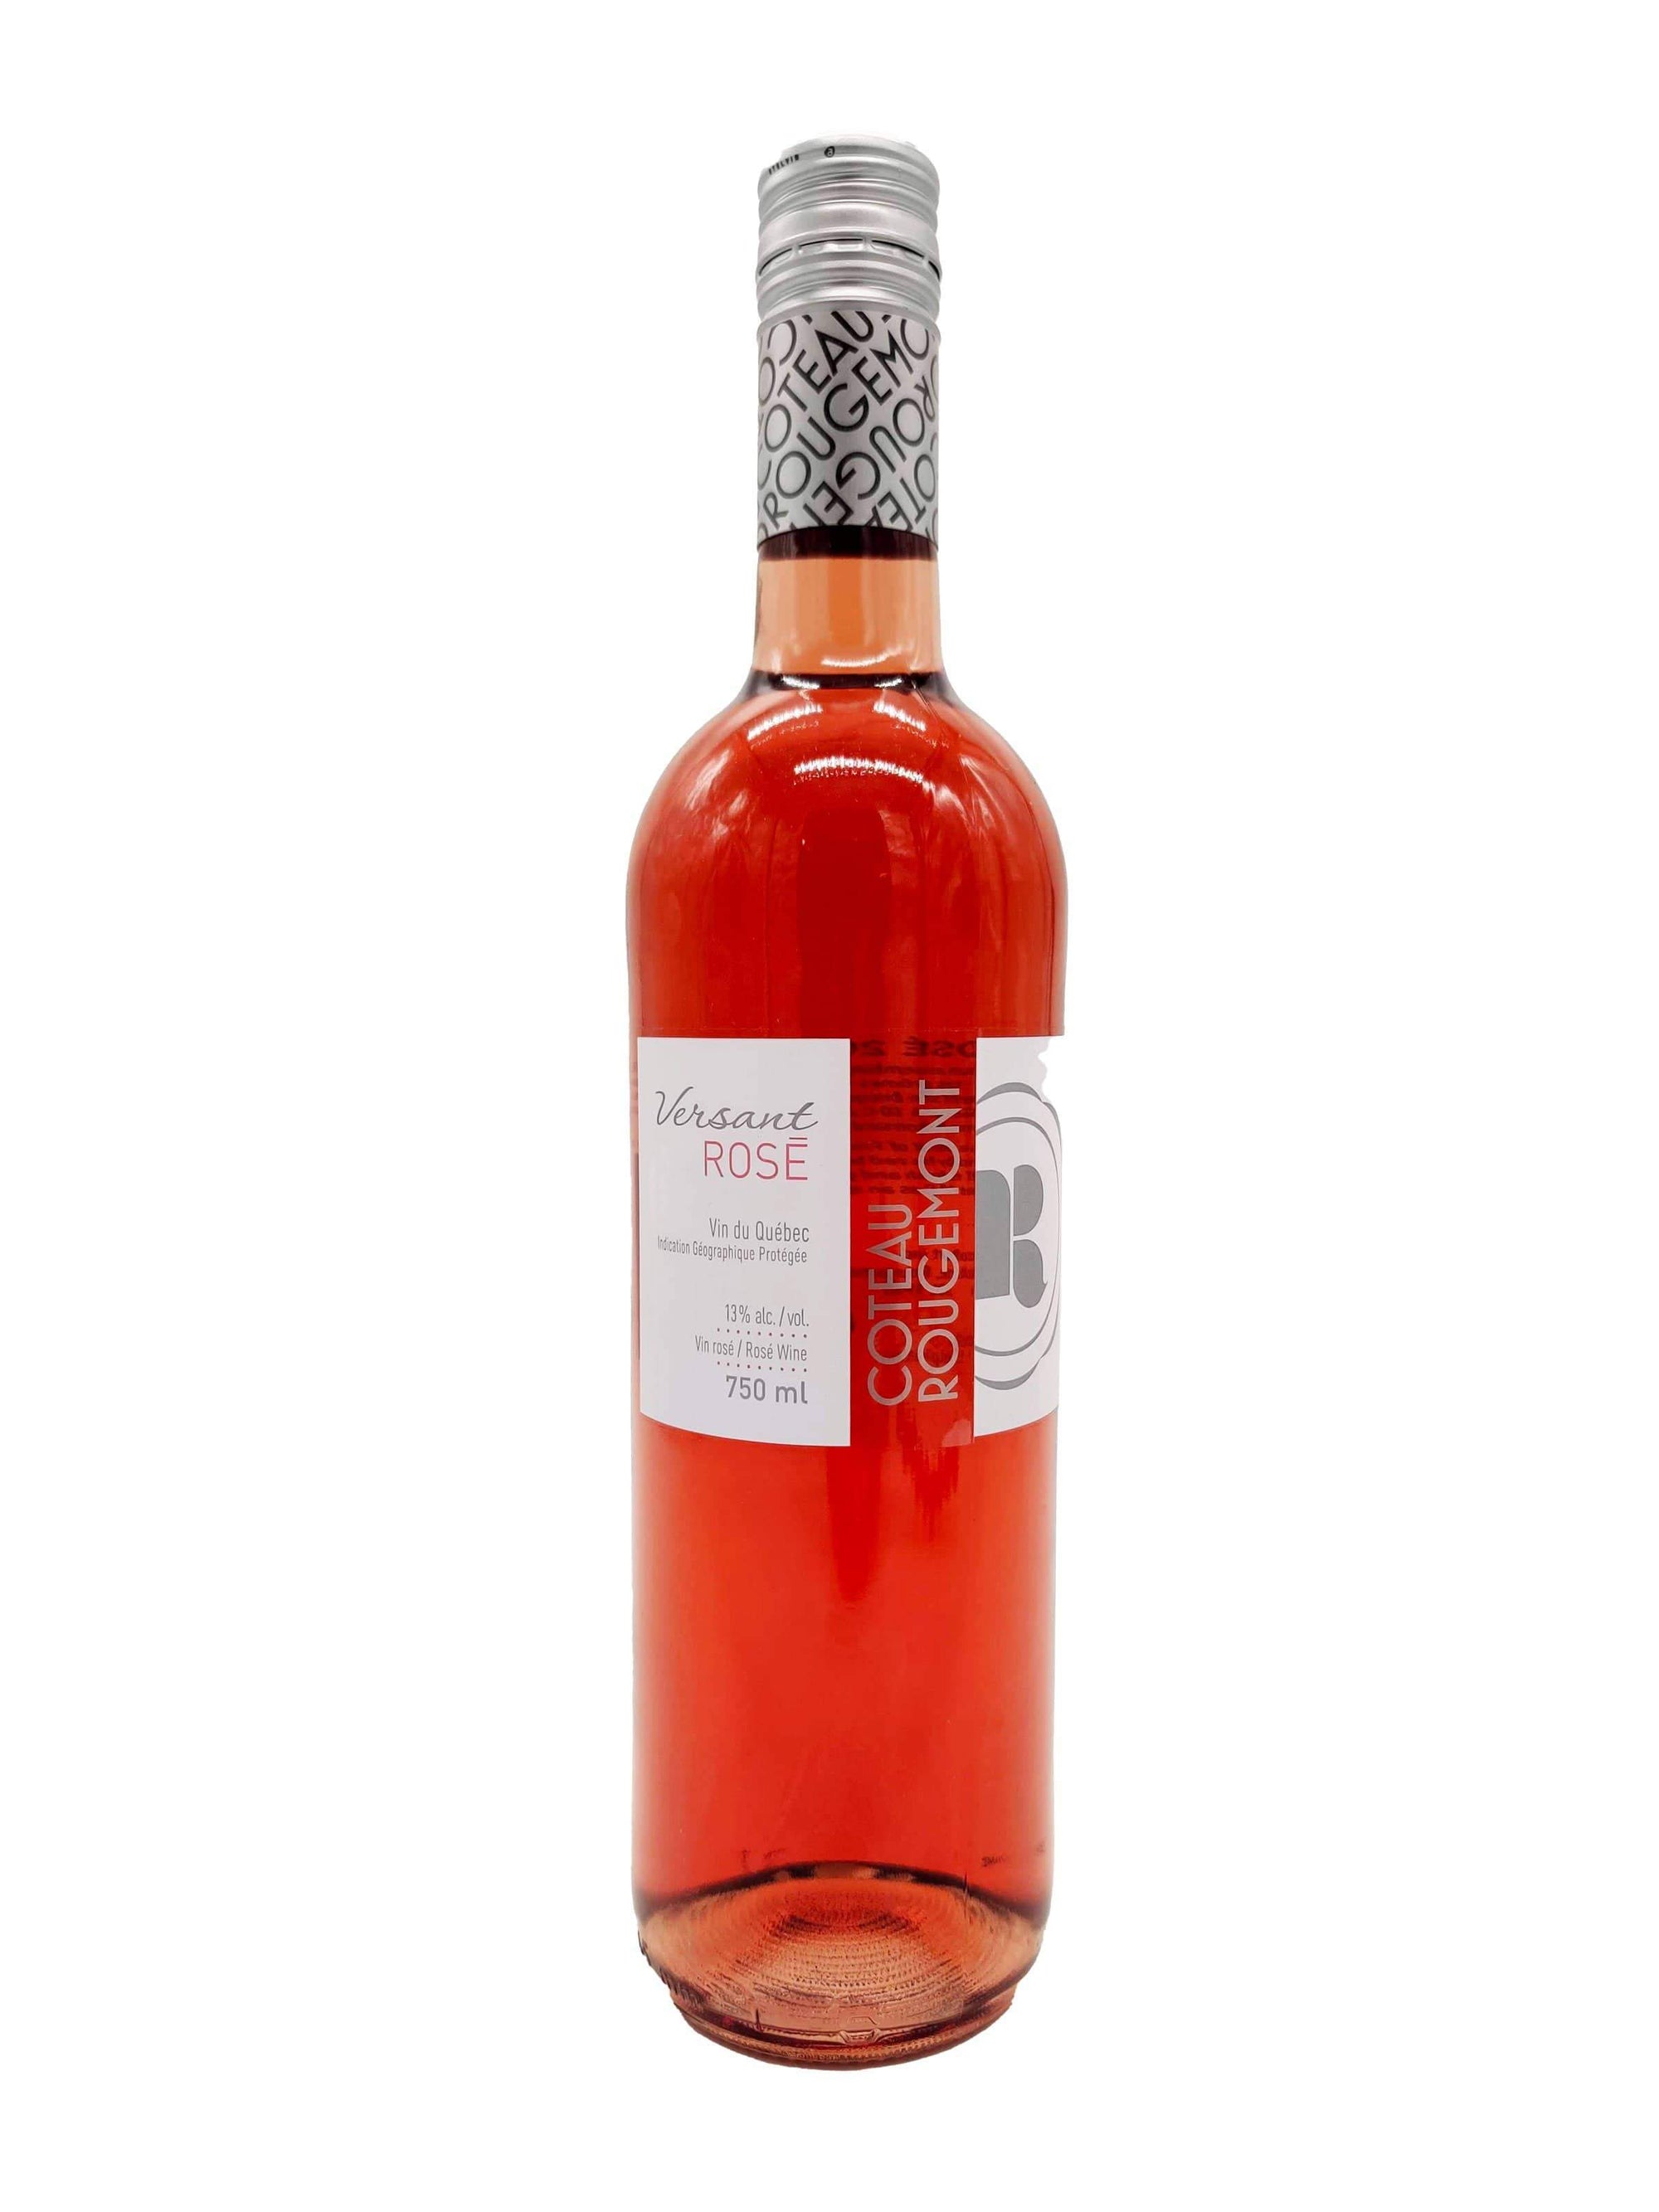 Versant Rosé - Vin rosé du Coteau Rougemont